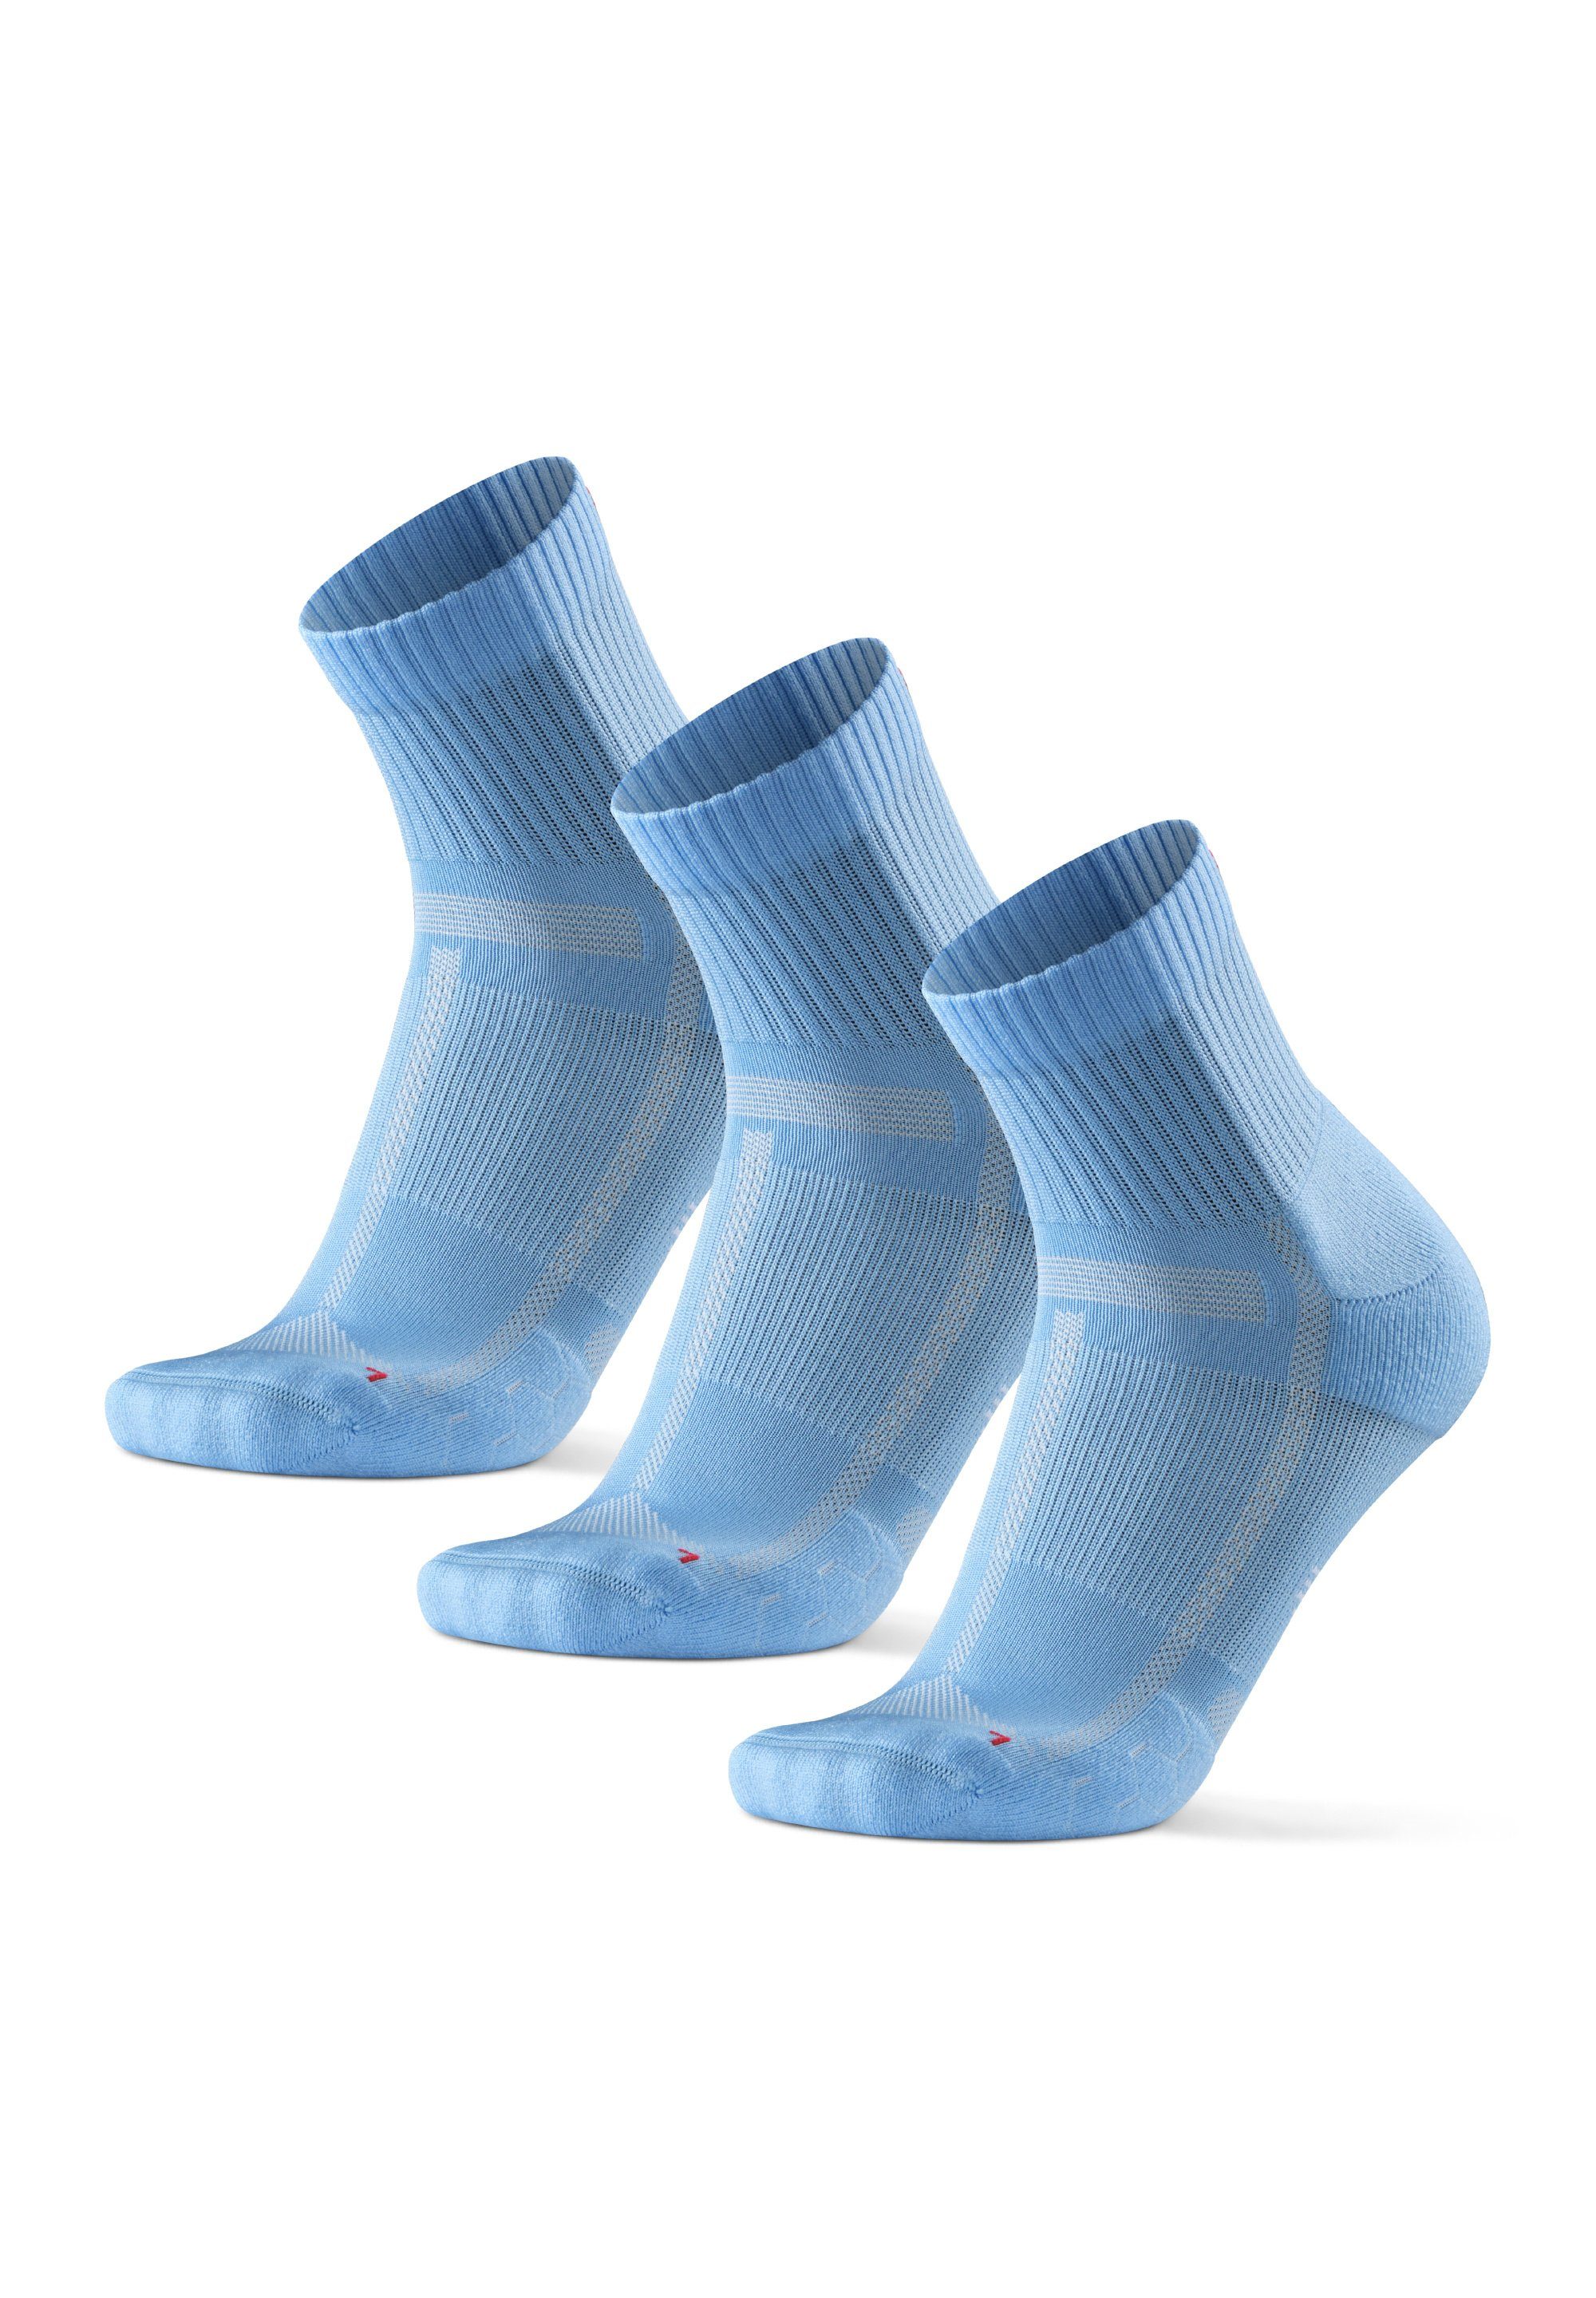 DANISH ENDURANCE Laufsocken Long Distance Running Socks (Packung, 3-Paar) Anti-Blasen, Technisch light blue | Socken